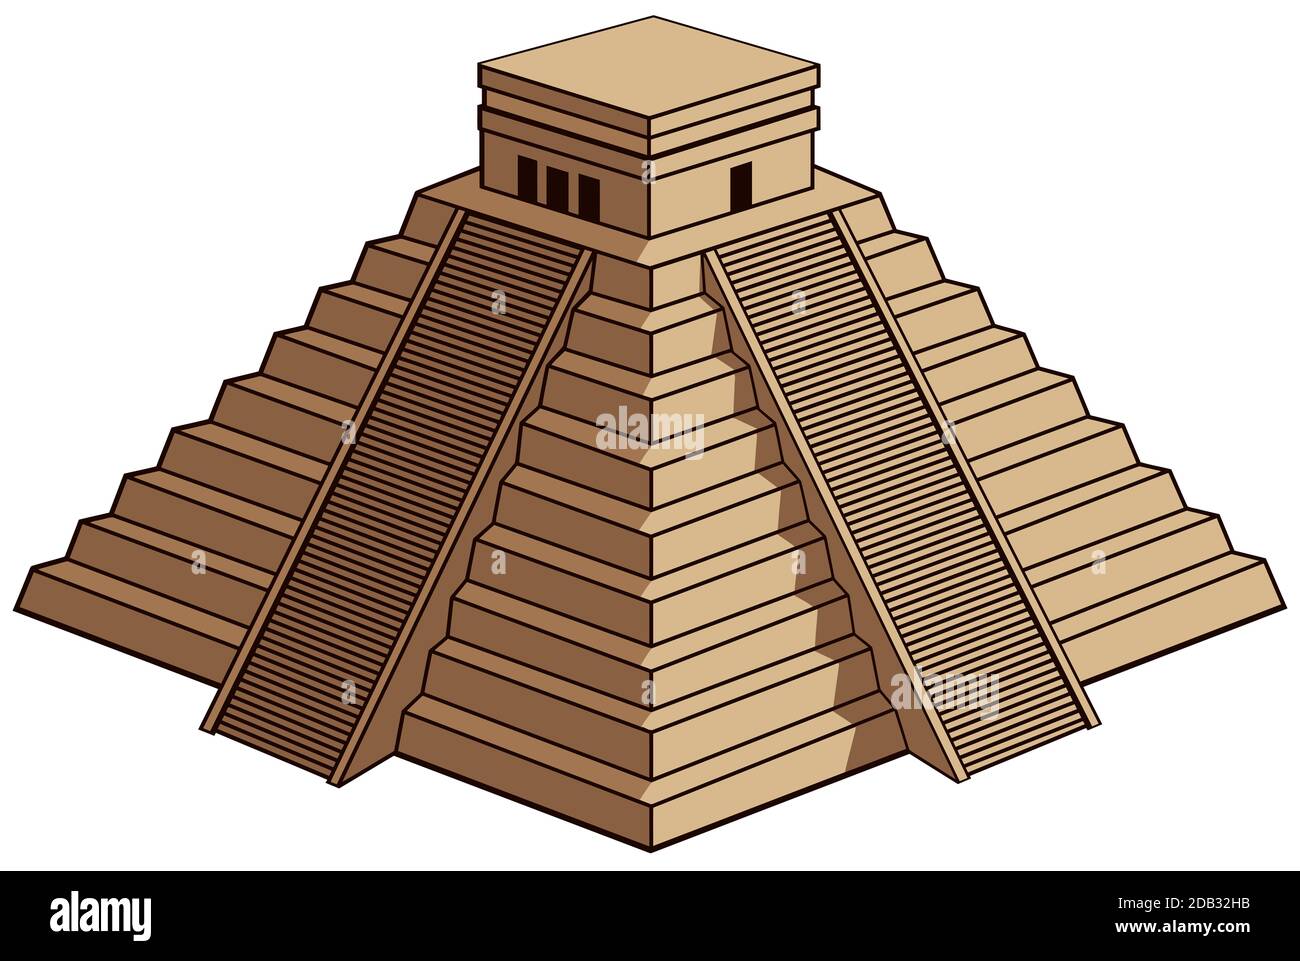 chichen itza mayan temple pyramid mexico ruin illustration Stock Photo